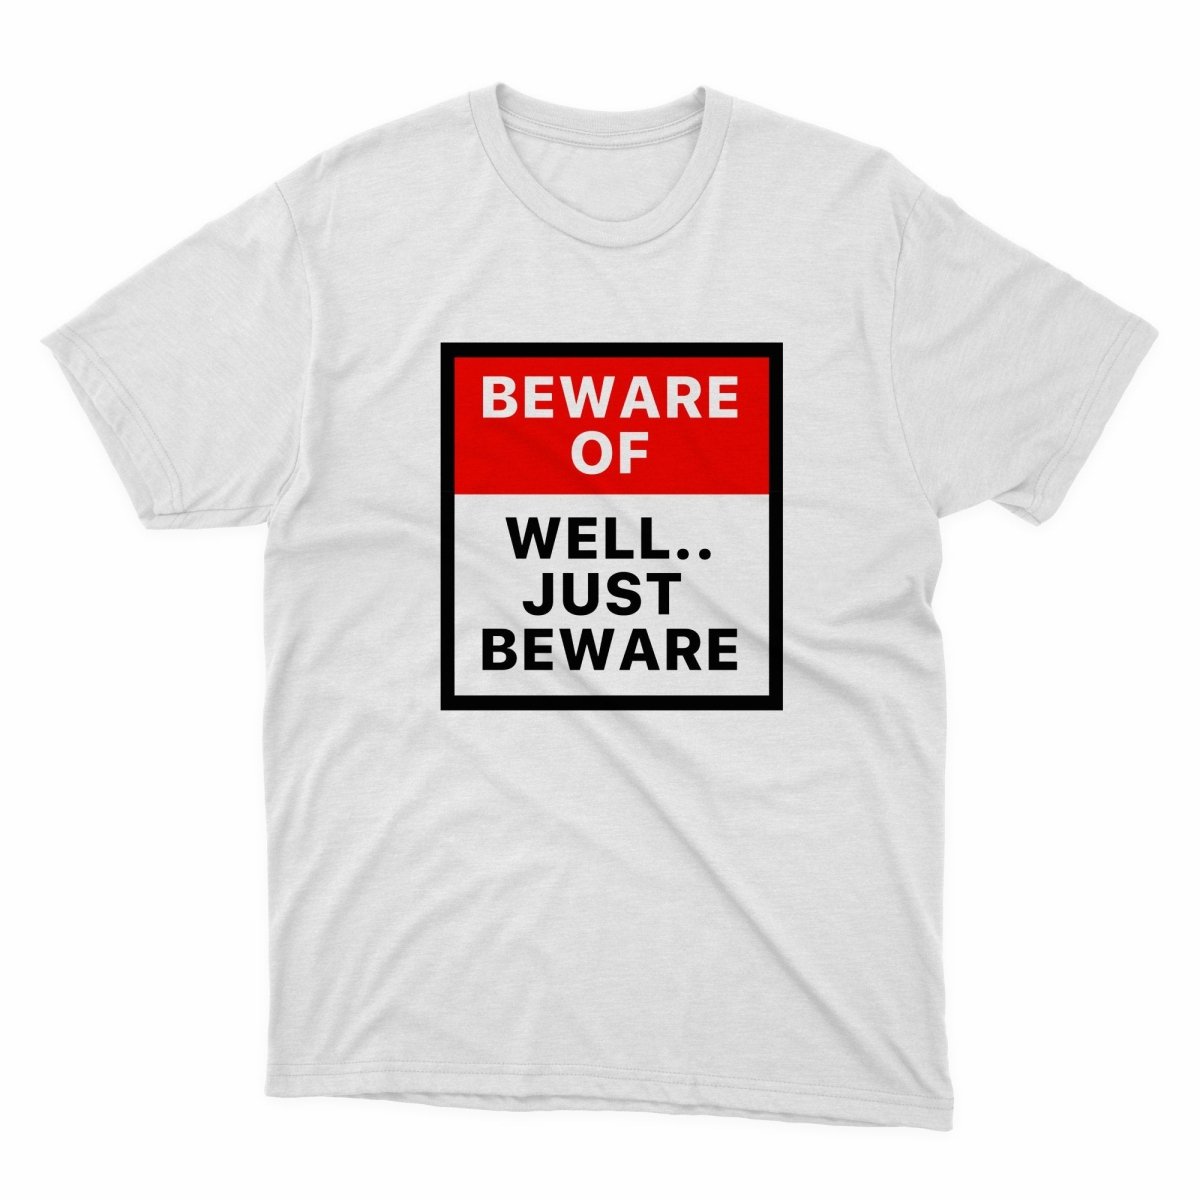 Beware Of, Well Just Beware Shirt - stickerbullBeware Of, Well Just Beware ShirtShirtsPrintifystickerbull28724434481937088026WhiteSa white t - shirt that says beware of well just beware